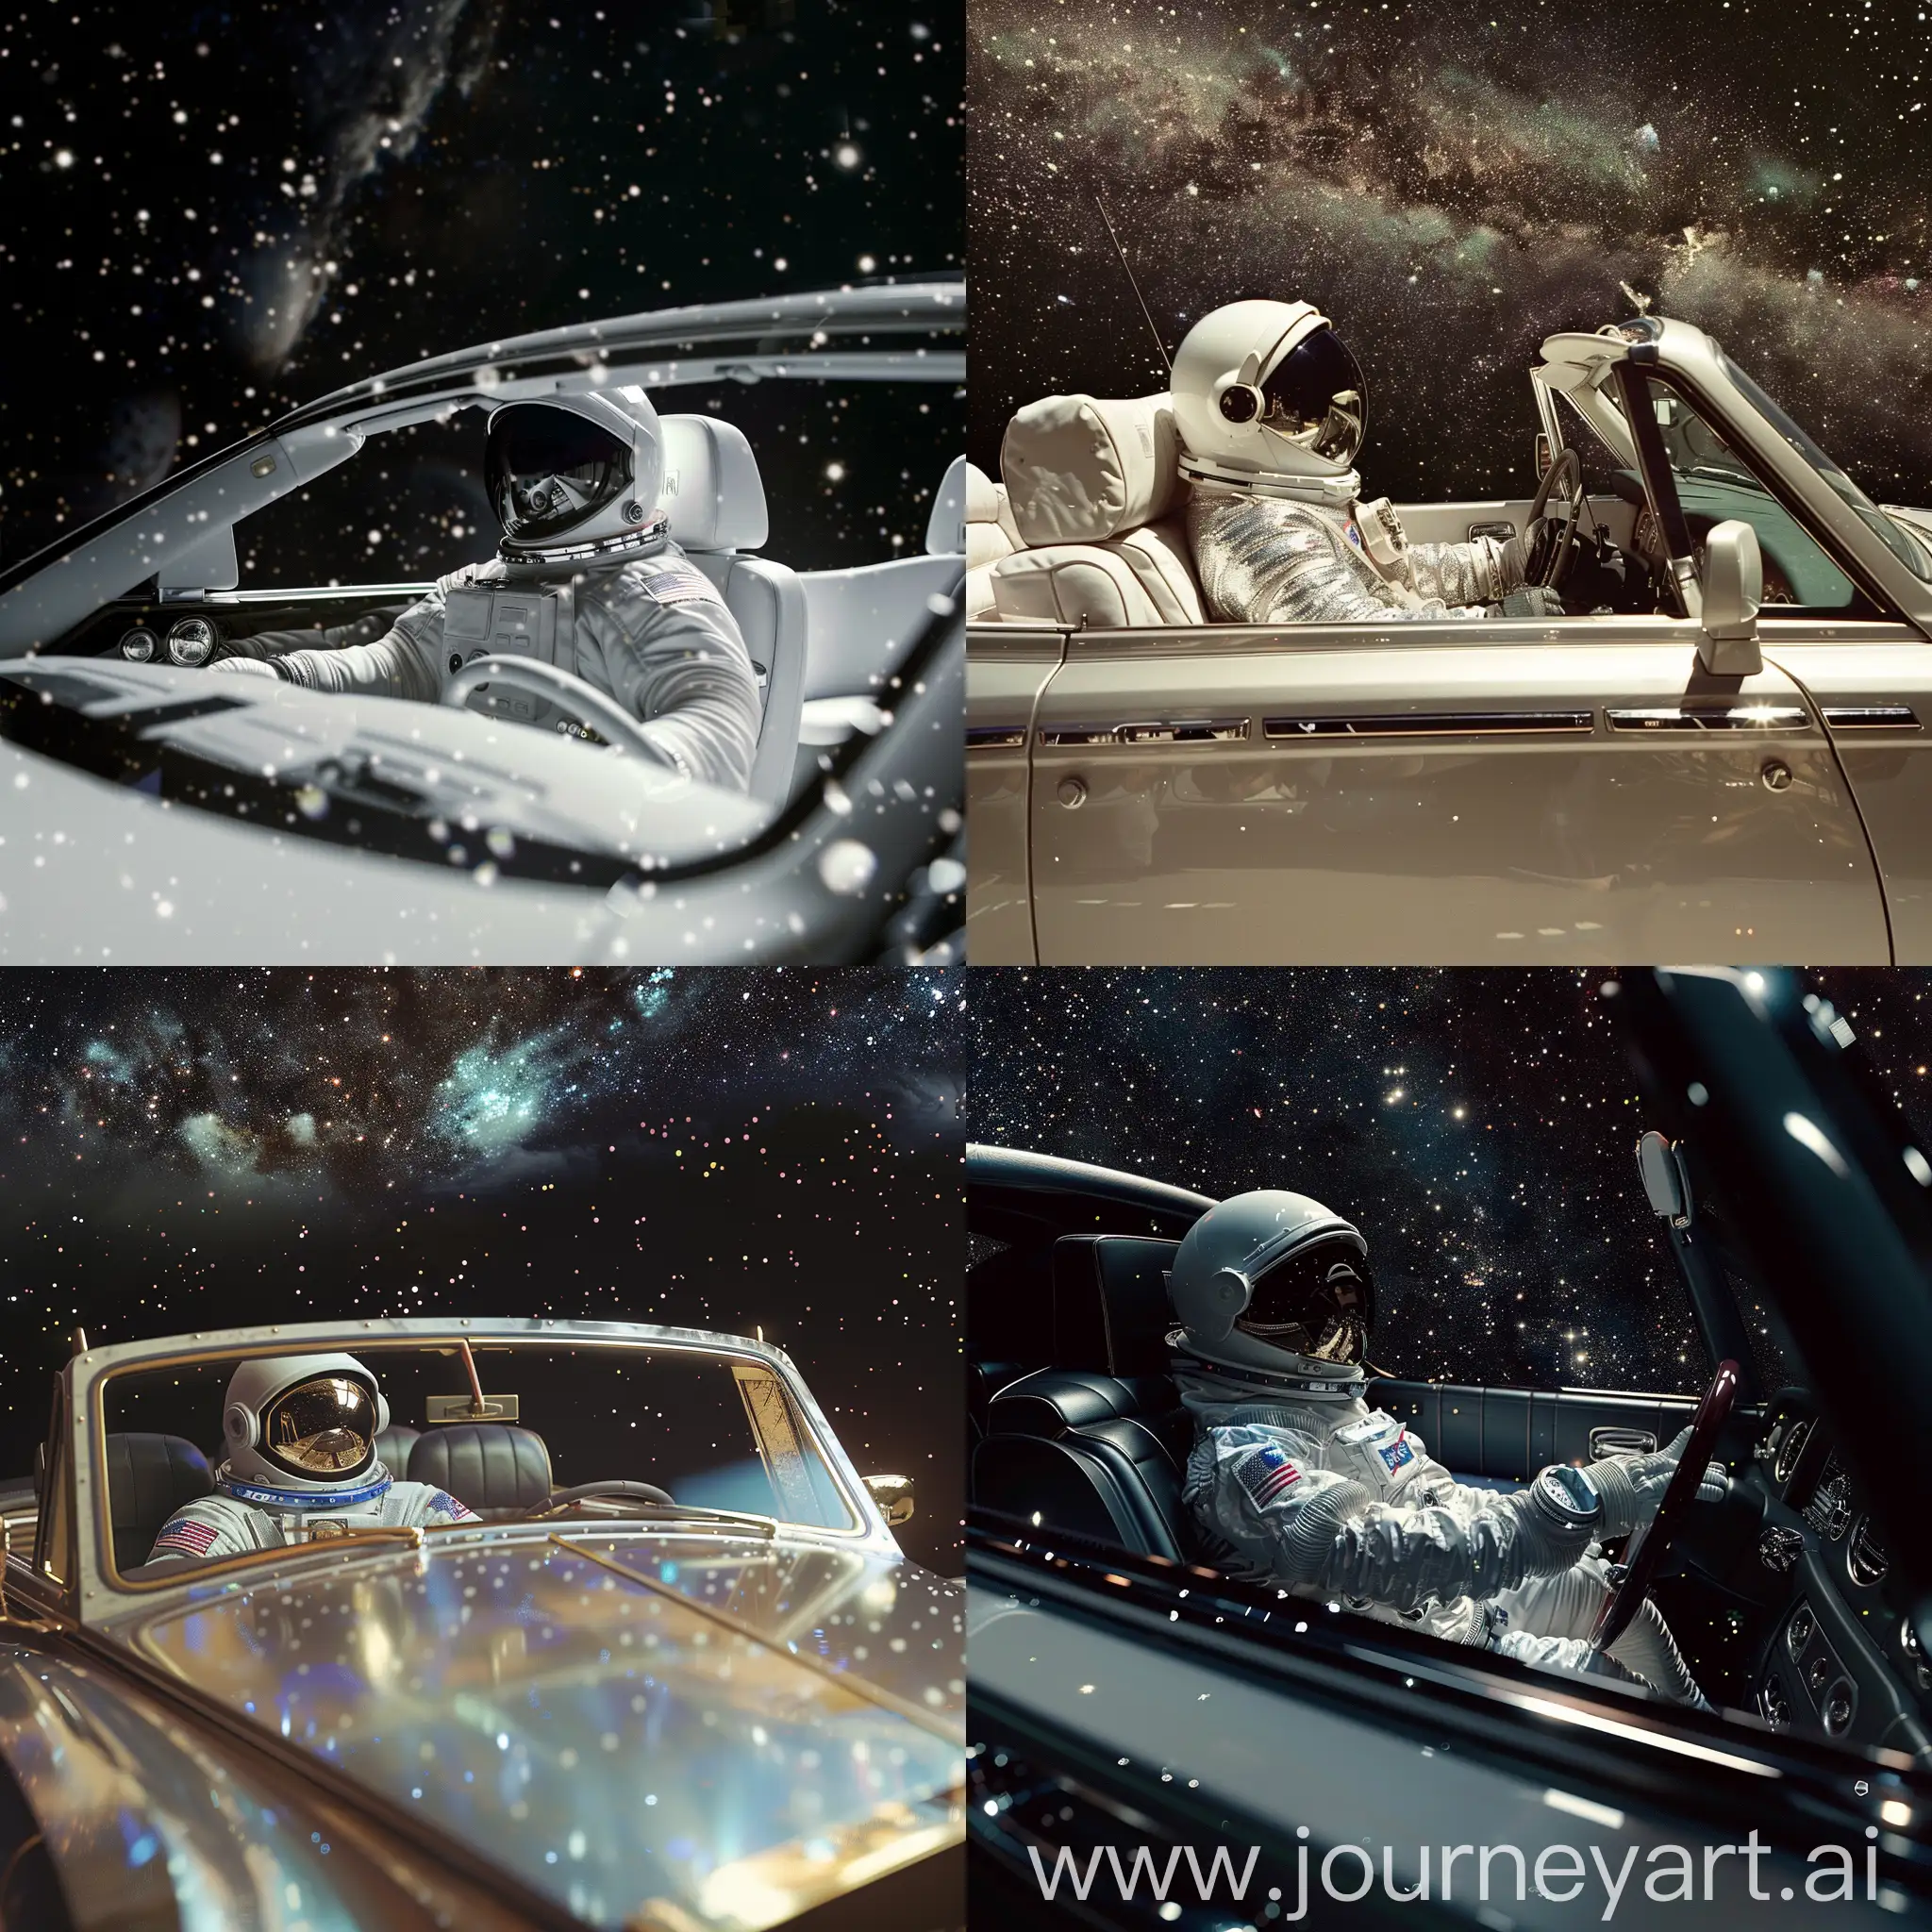 Astronaut-in-SpaceThemed-Rolls-Royce